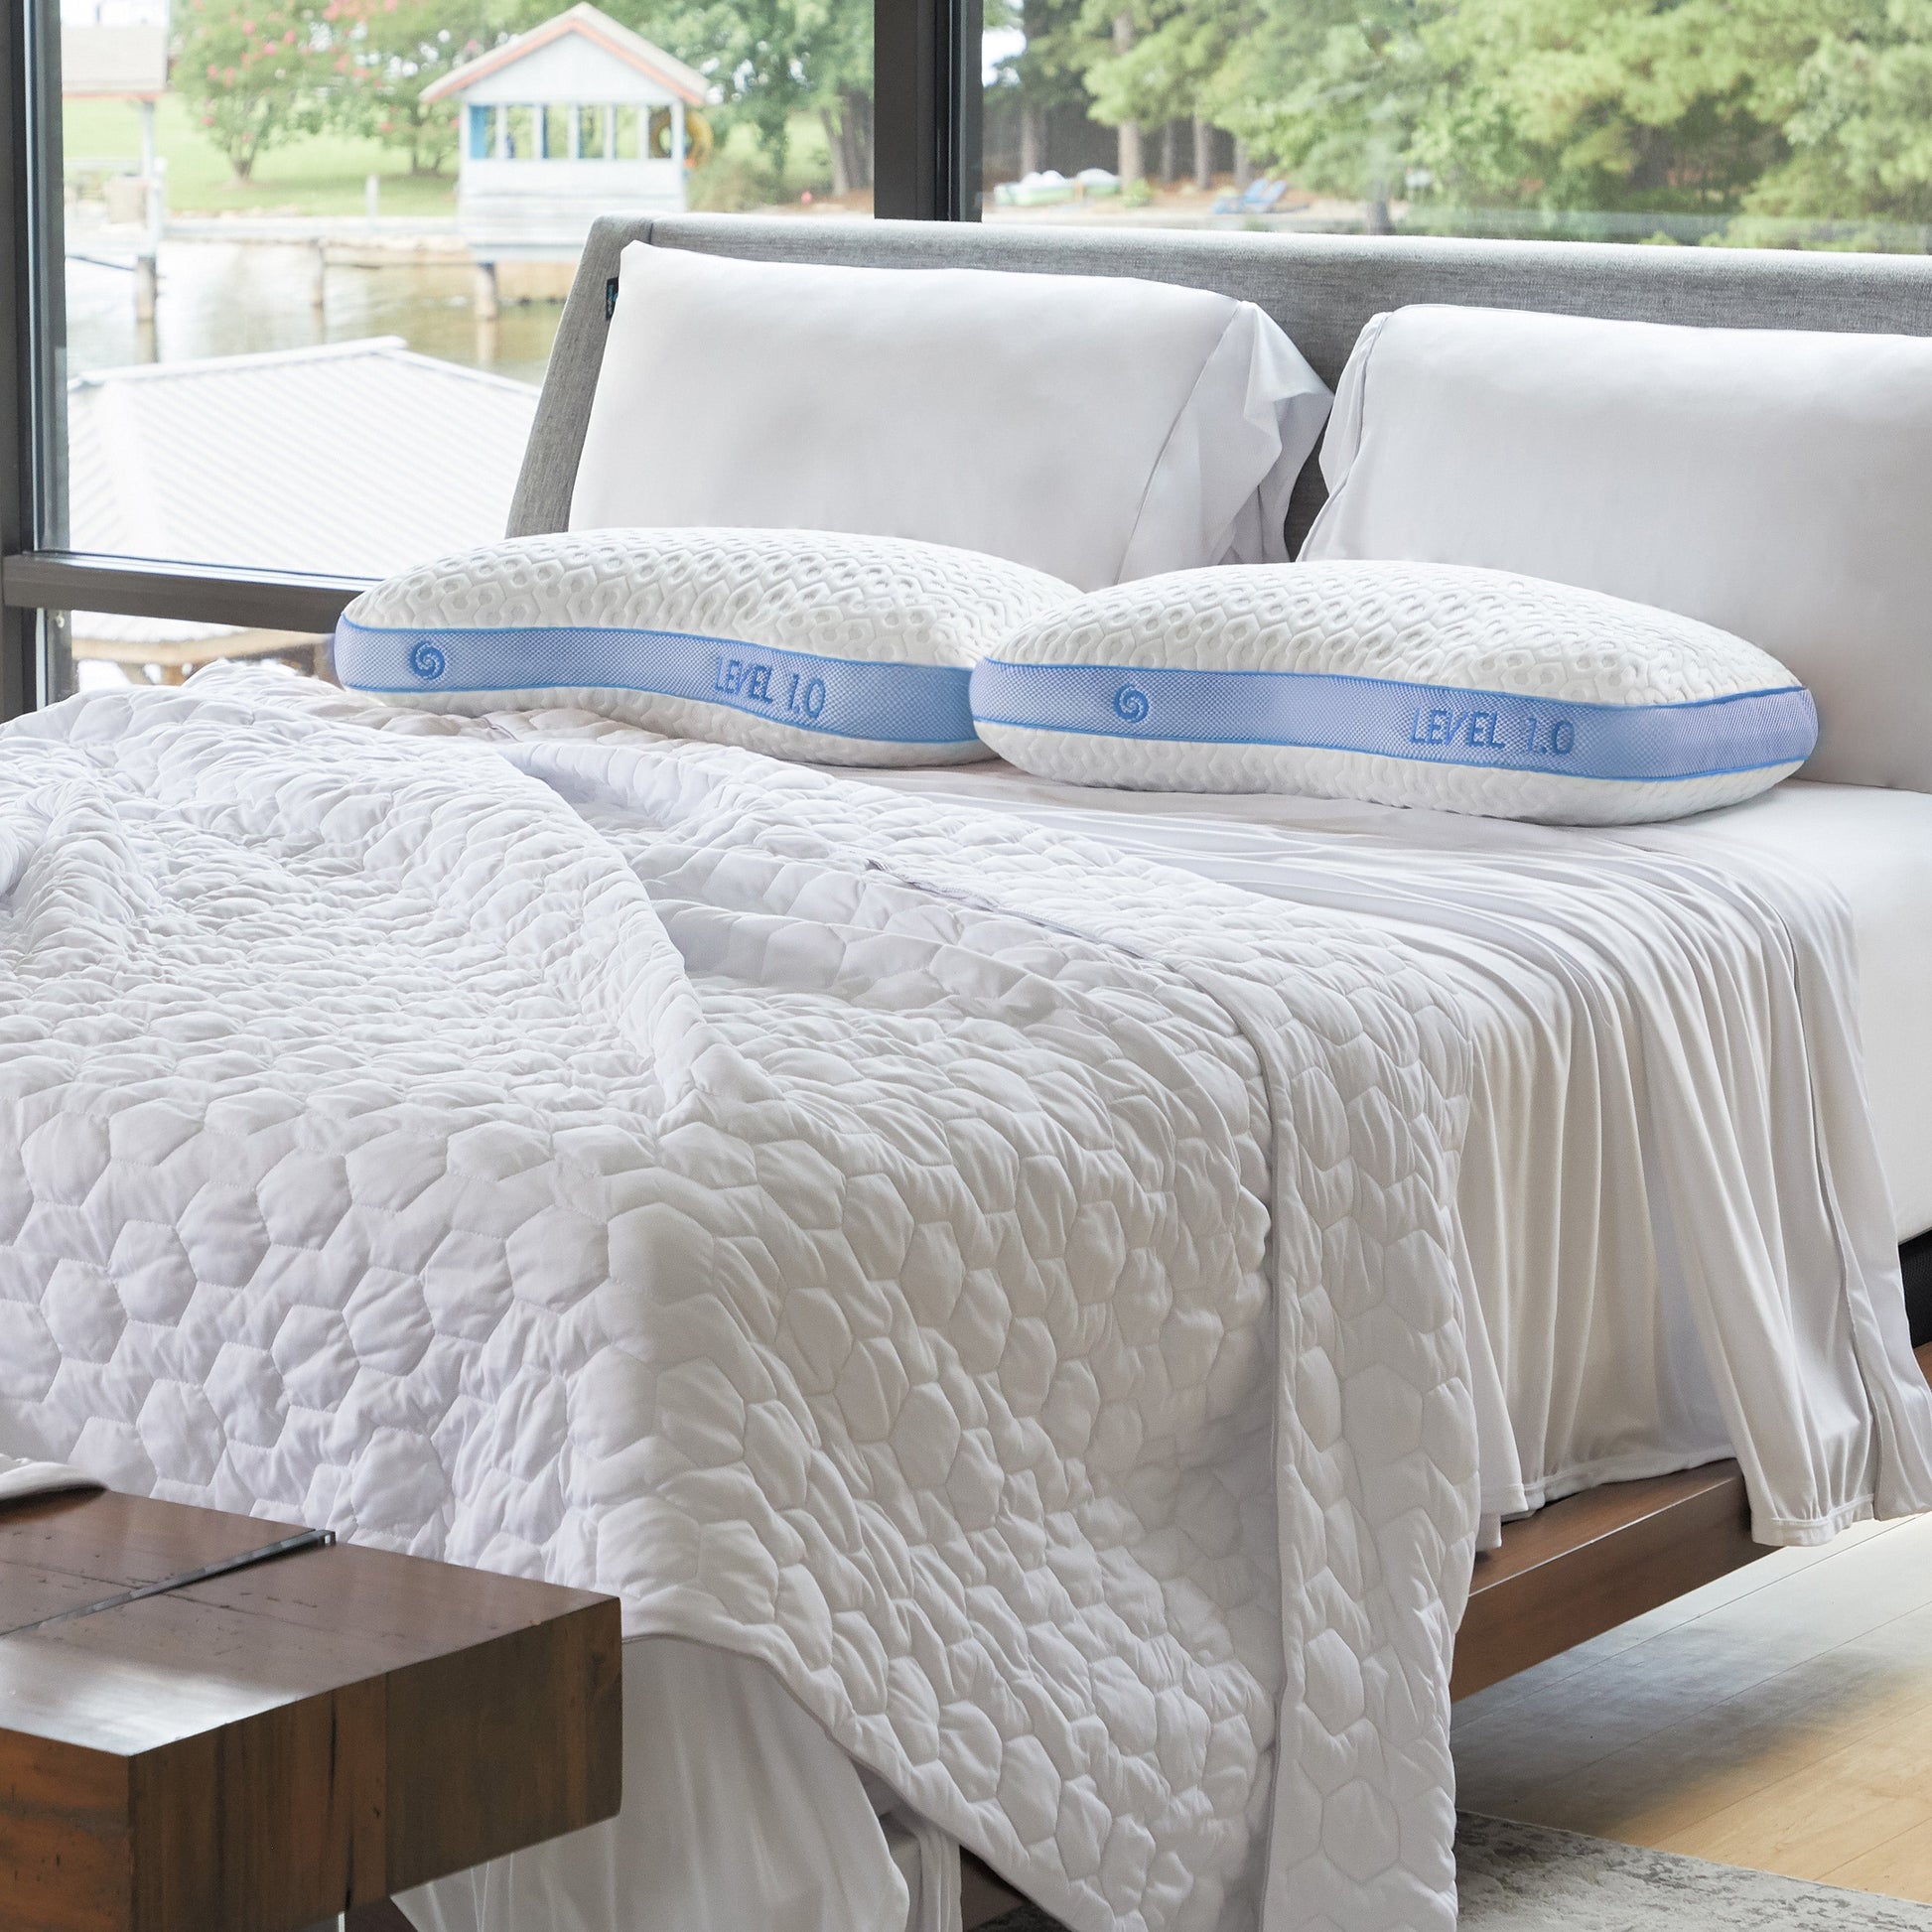 Bedgear Level Performance Pillow 1.0 on mattress